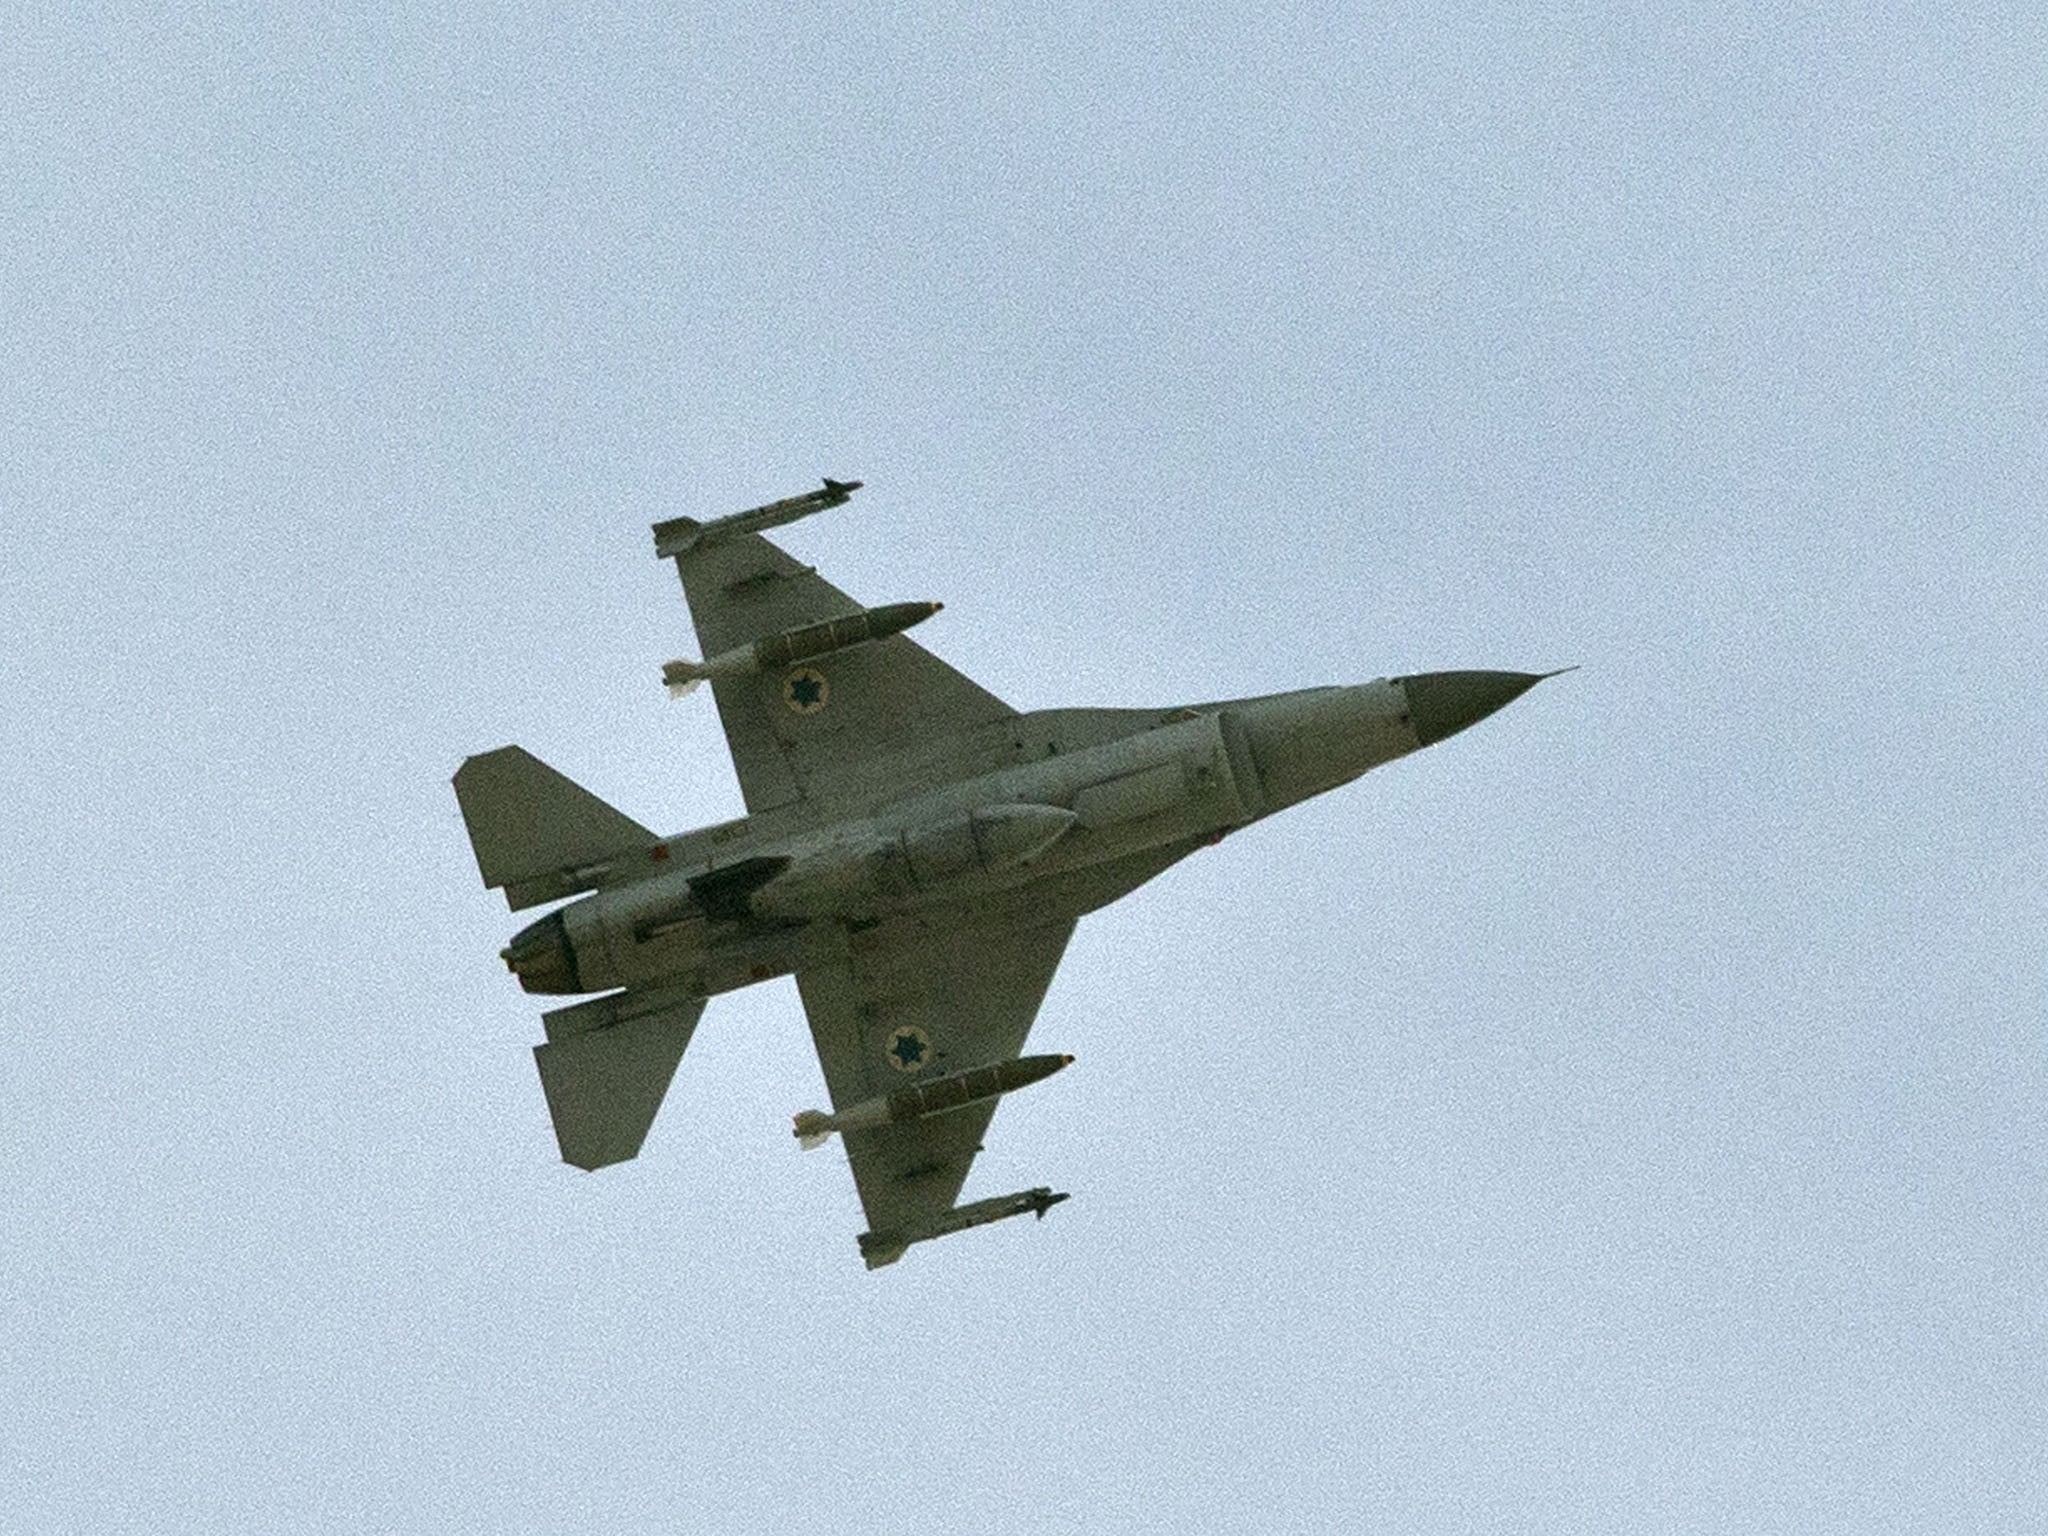 An F-16 jet.